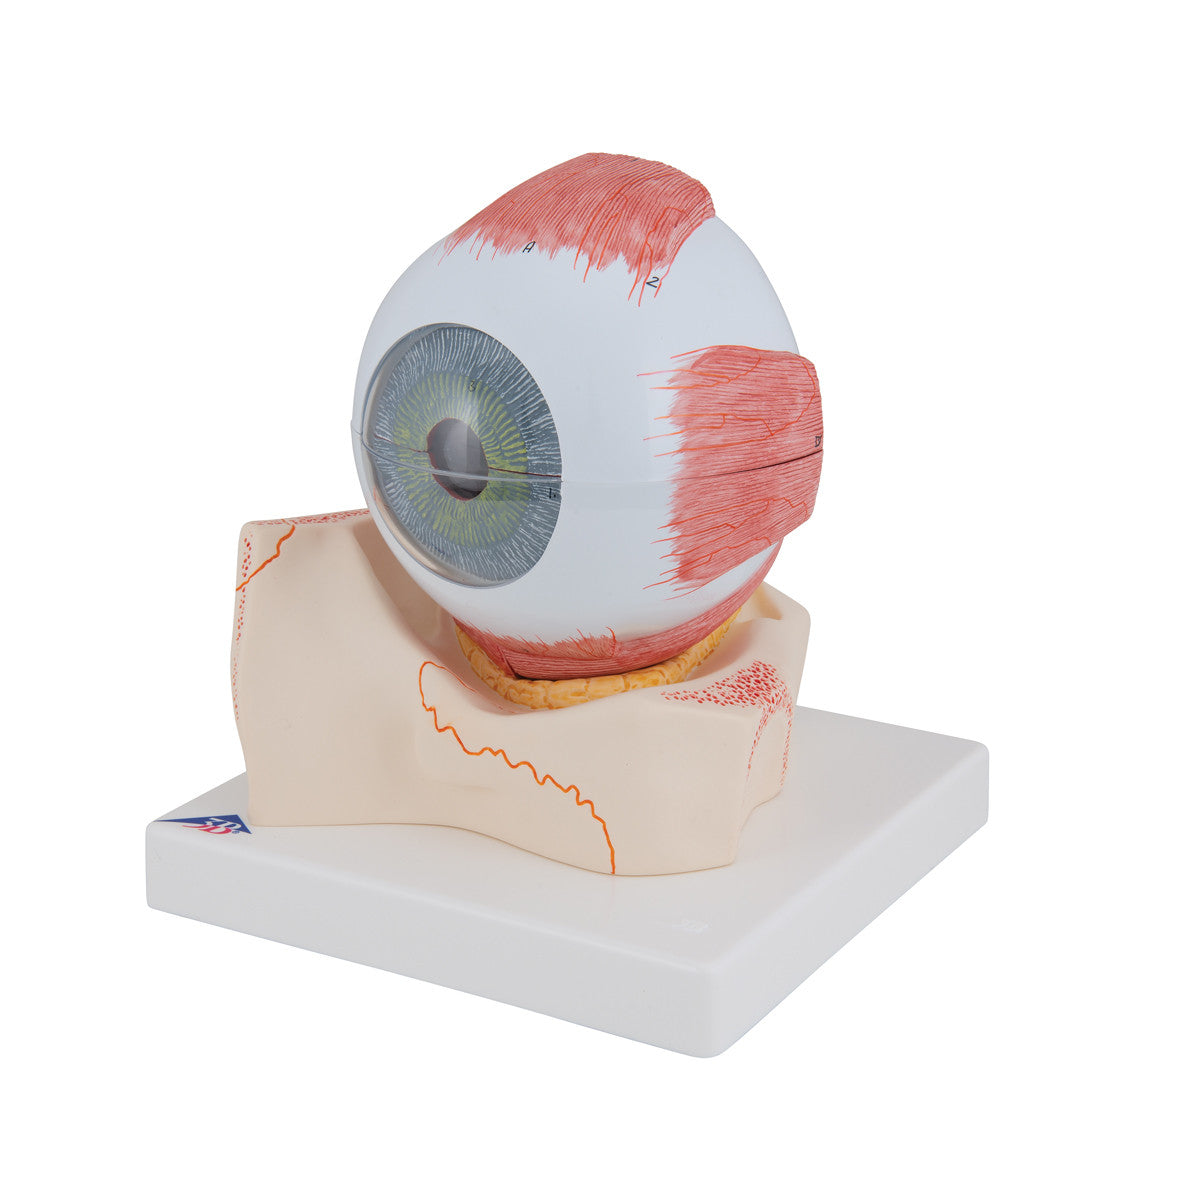 Eye Model in Orbit | 3B Scientific F11